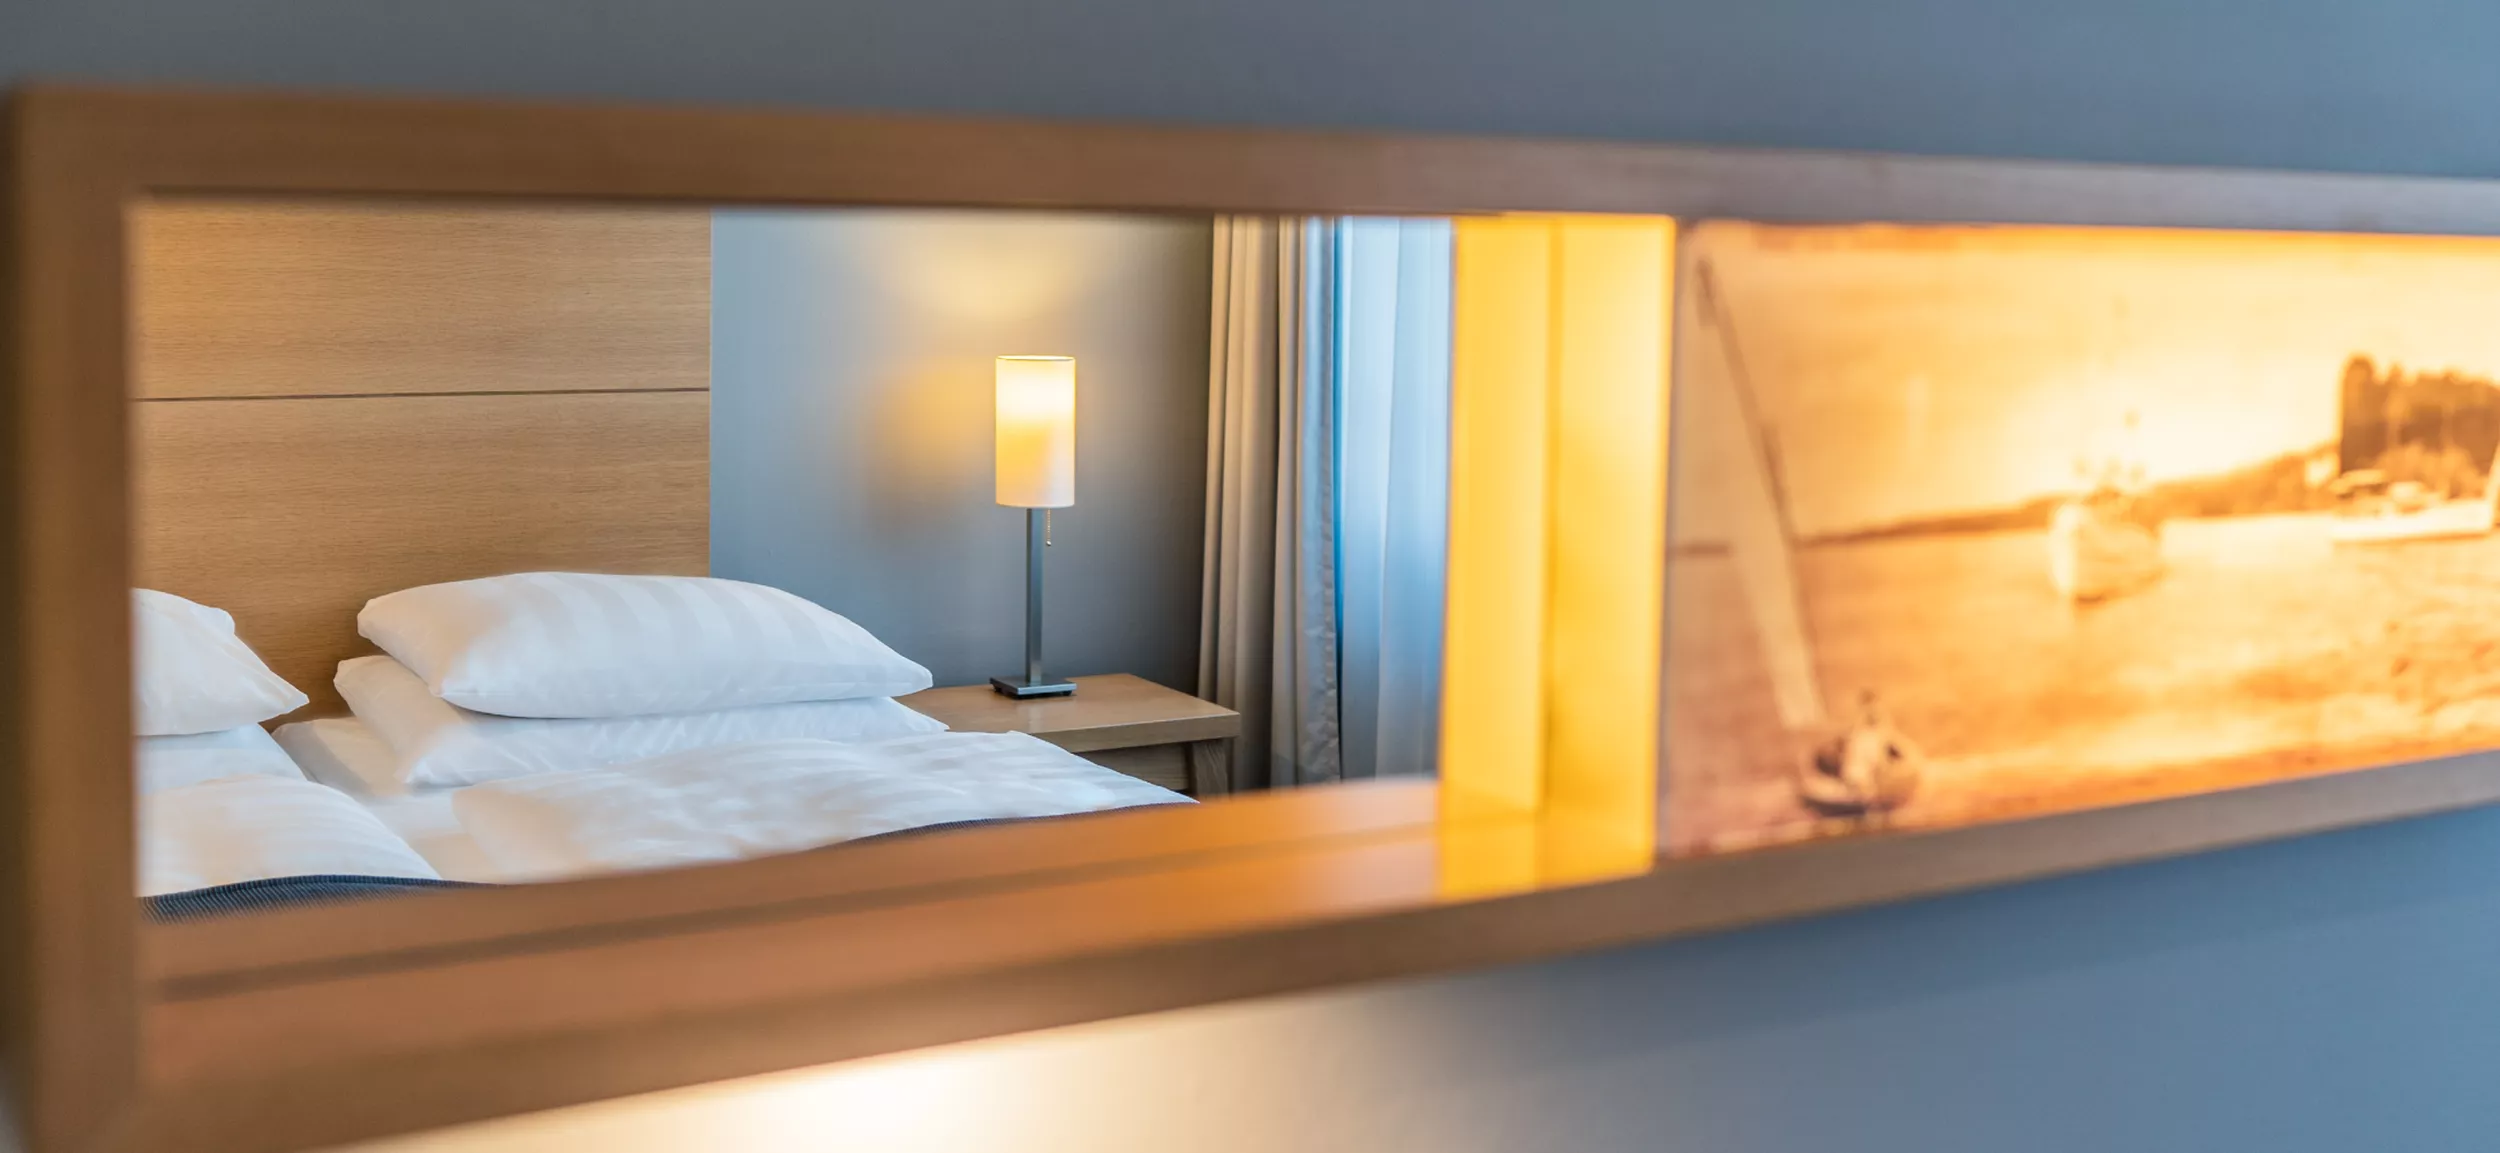 Spiegel fotografiert, darin spiegelt sich Kopfende von Doppelbett mit Nachttischlampe